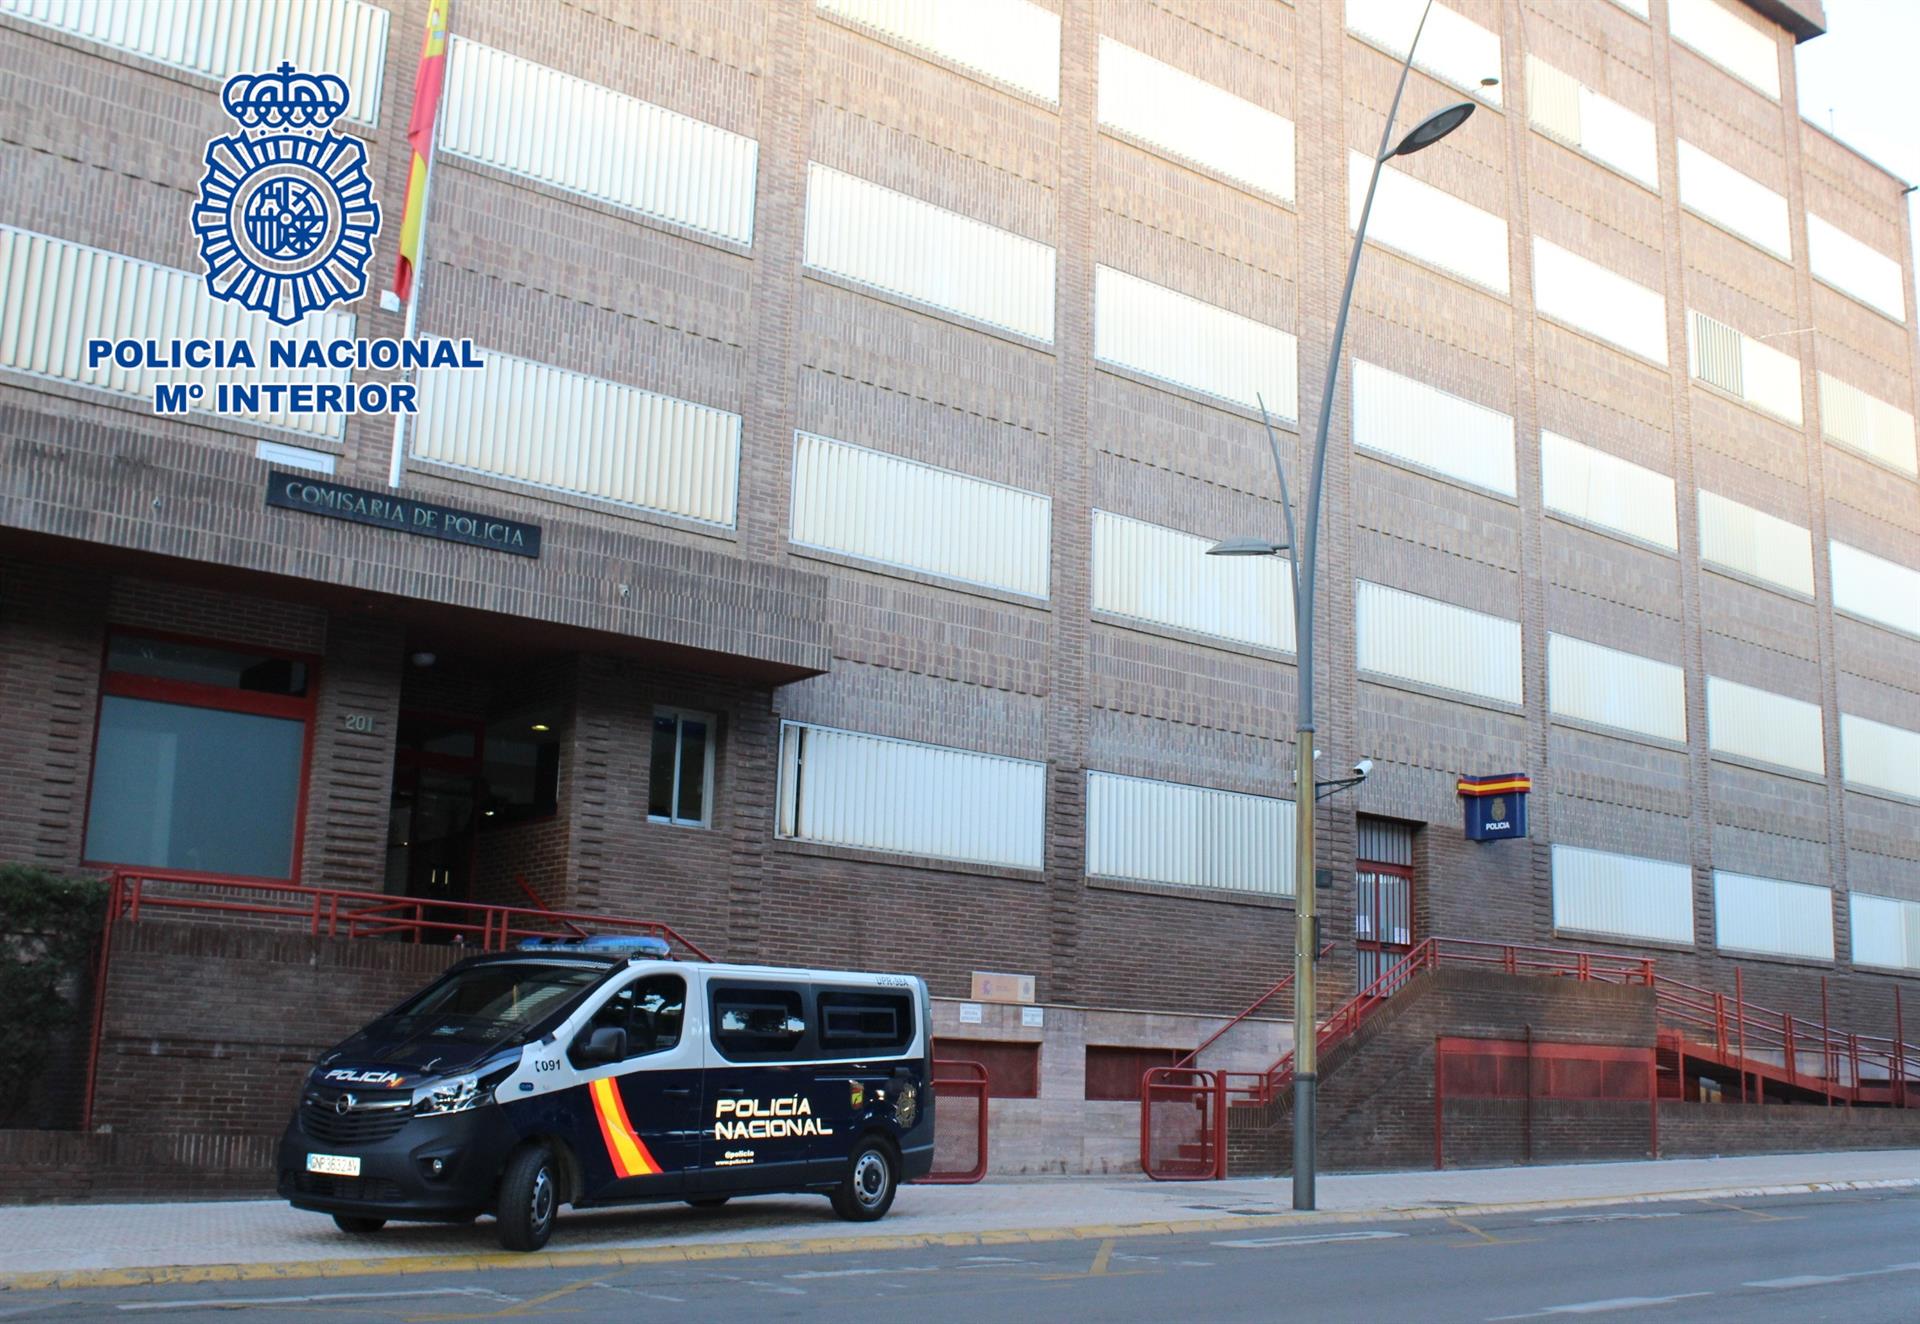 Comisaría de Policía Nacional de Almería.